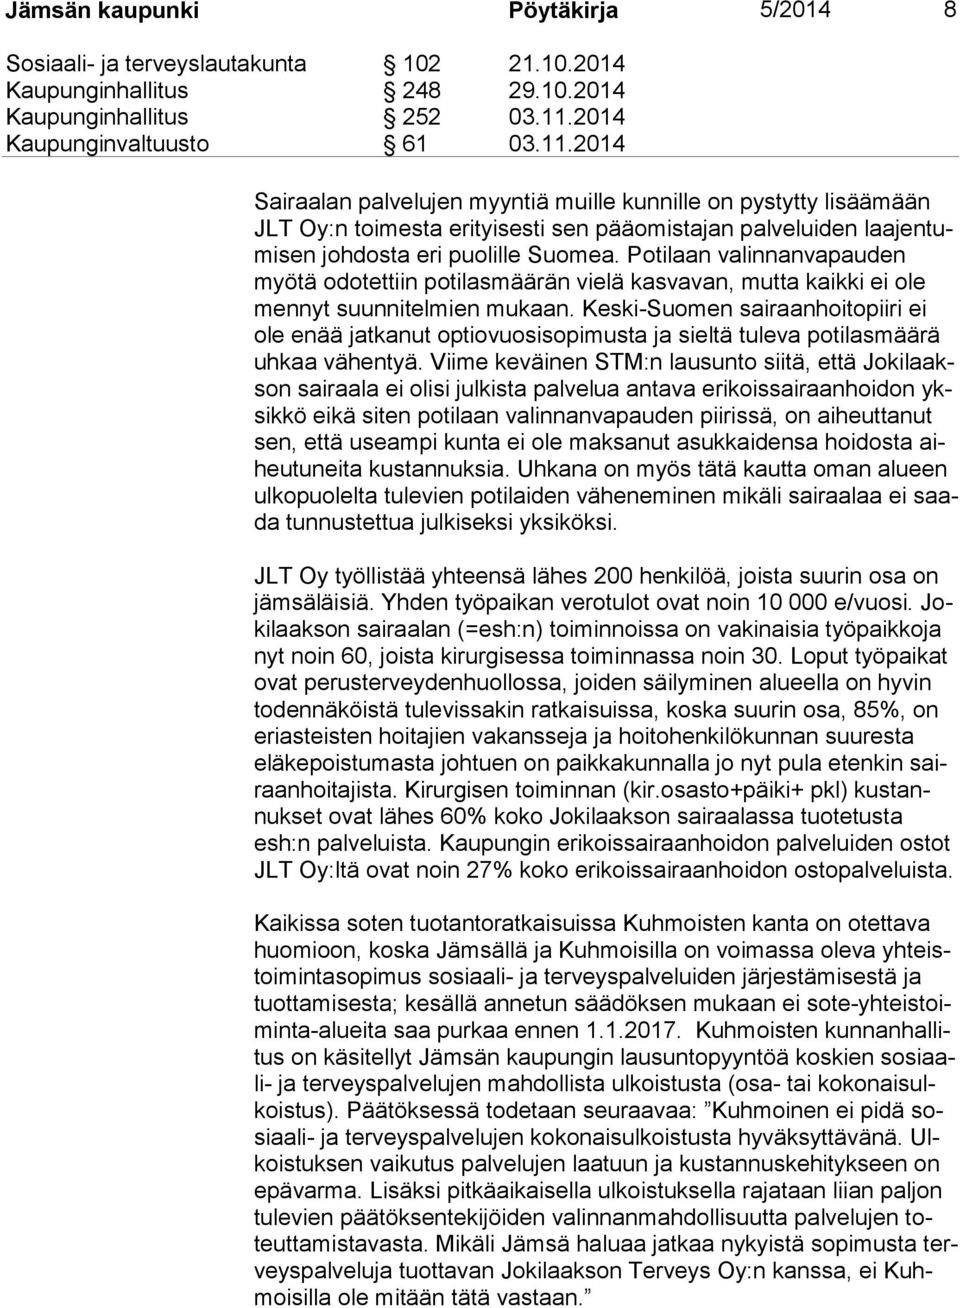 Keski-Suomen sairaanhoitopiiri ei ole enää jatkanut optiovuosisopimusta ja sieltä tuleva potilasmäärä uh kaa vähentyä.